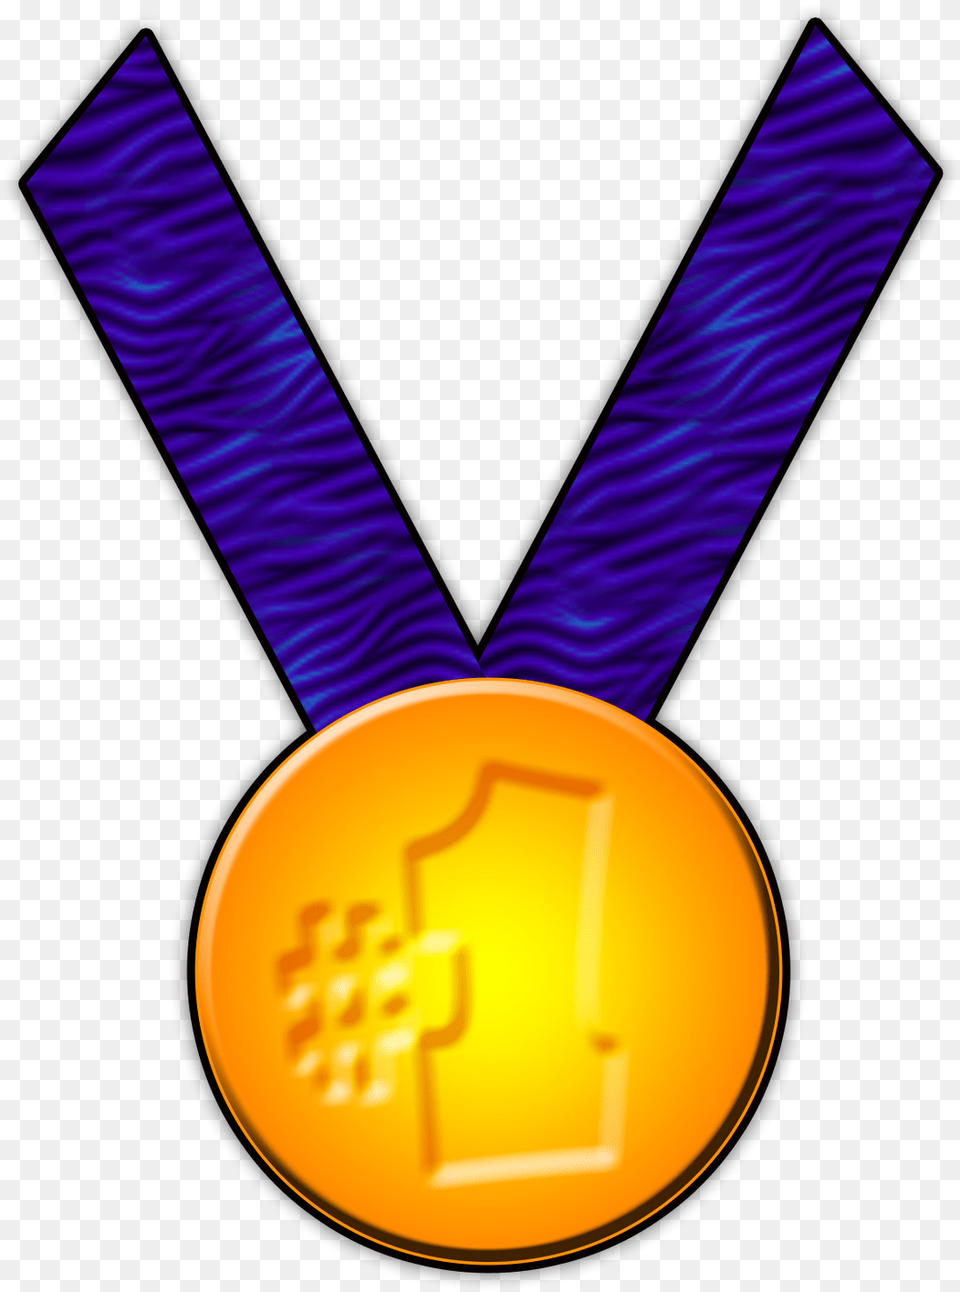 Gold Medal Gymnast Clipart, Gold Medal, Trophy Free Transparent Png